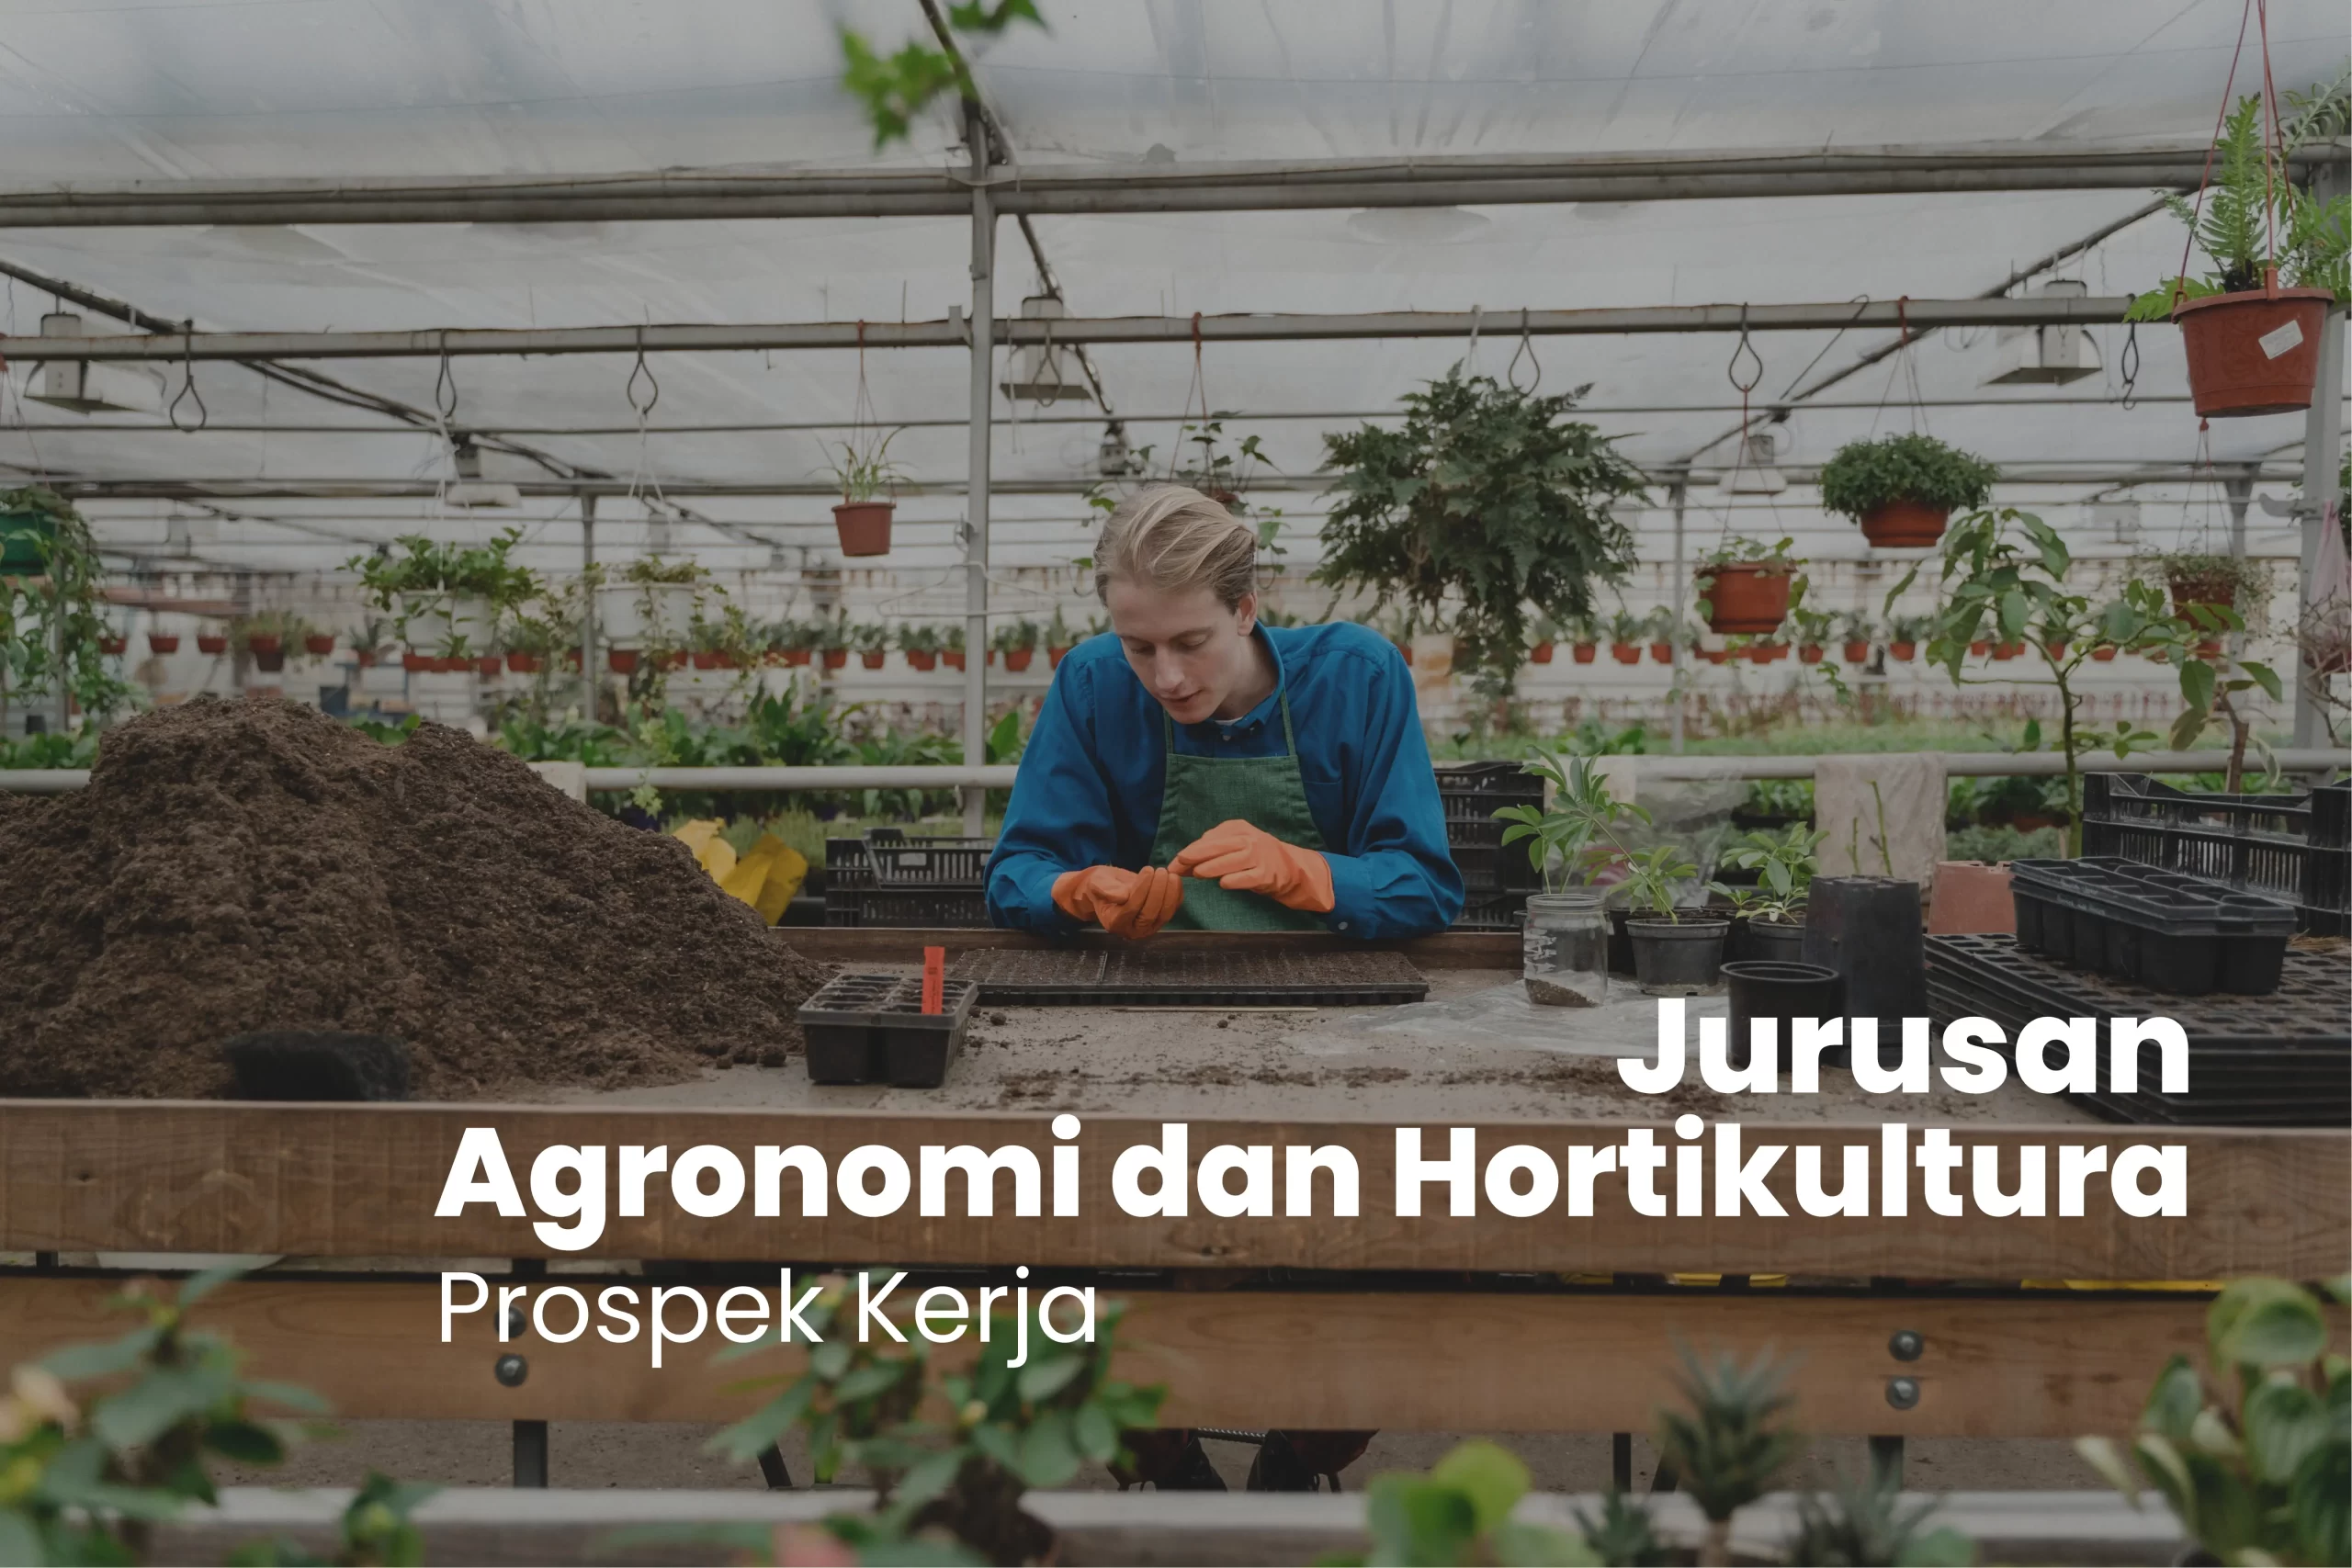 Prospek Kerja Jurusan Agronomi dan Hortikultura